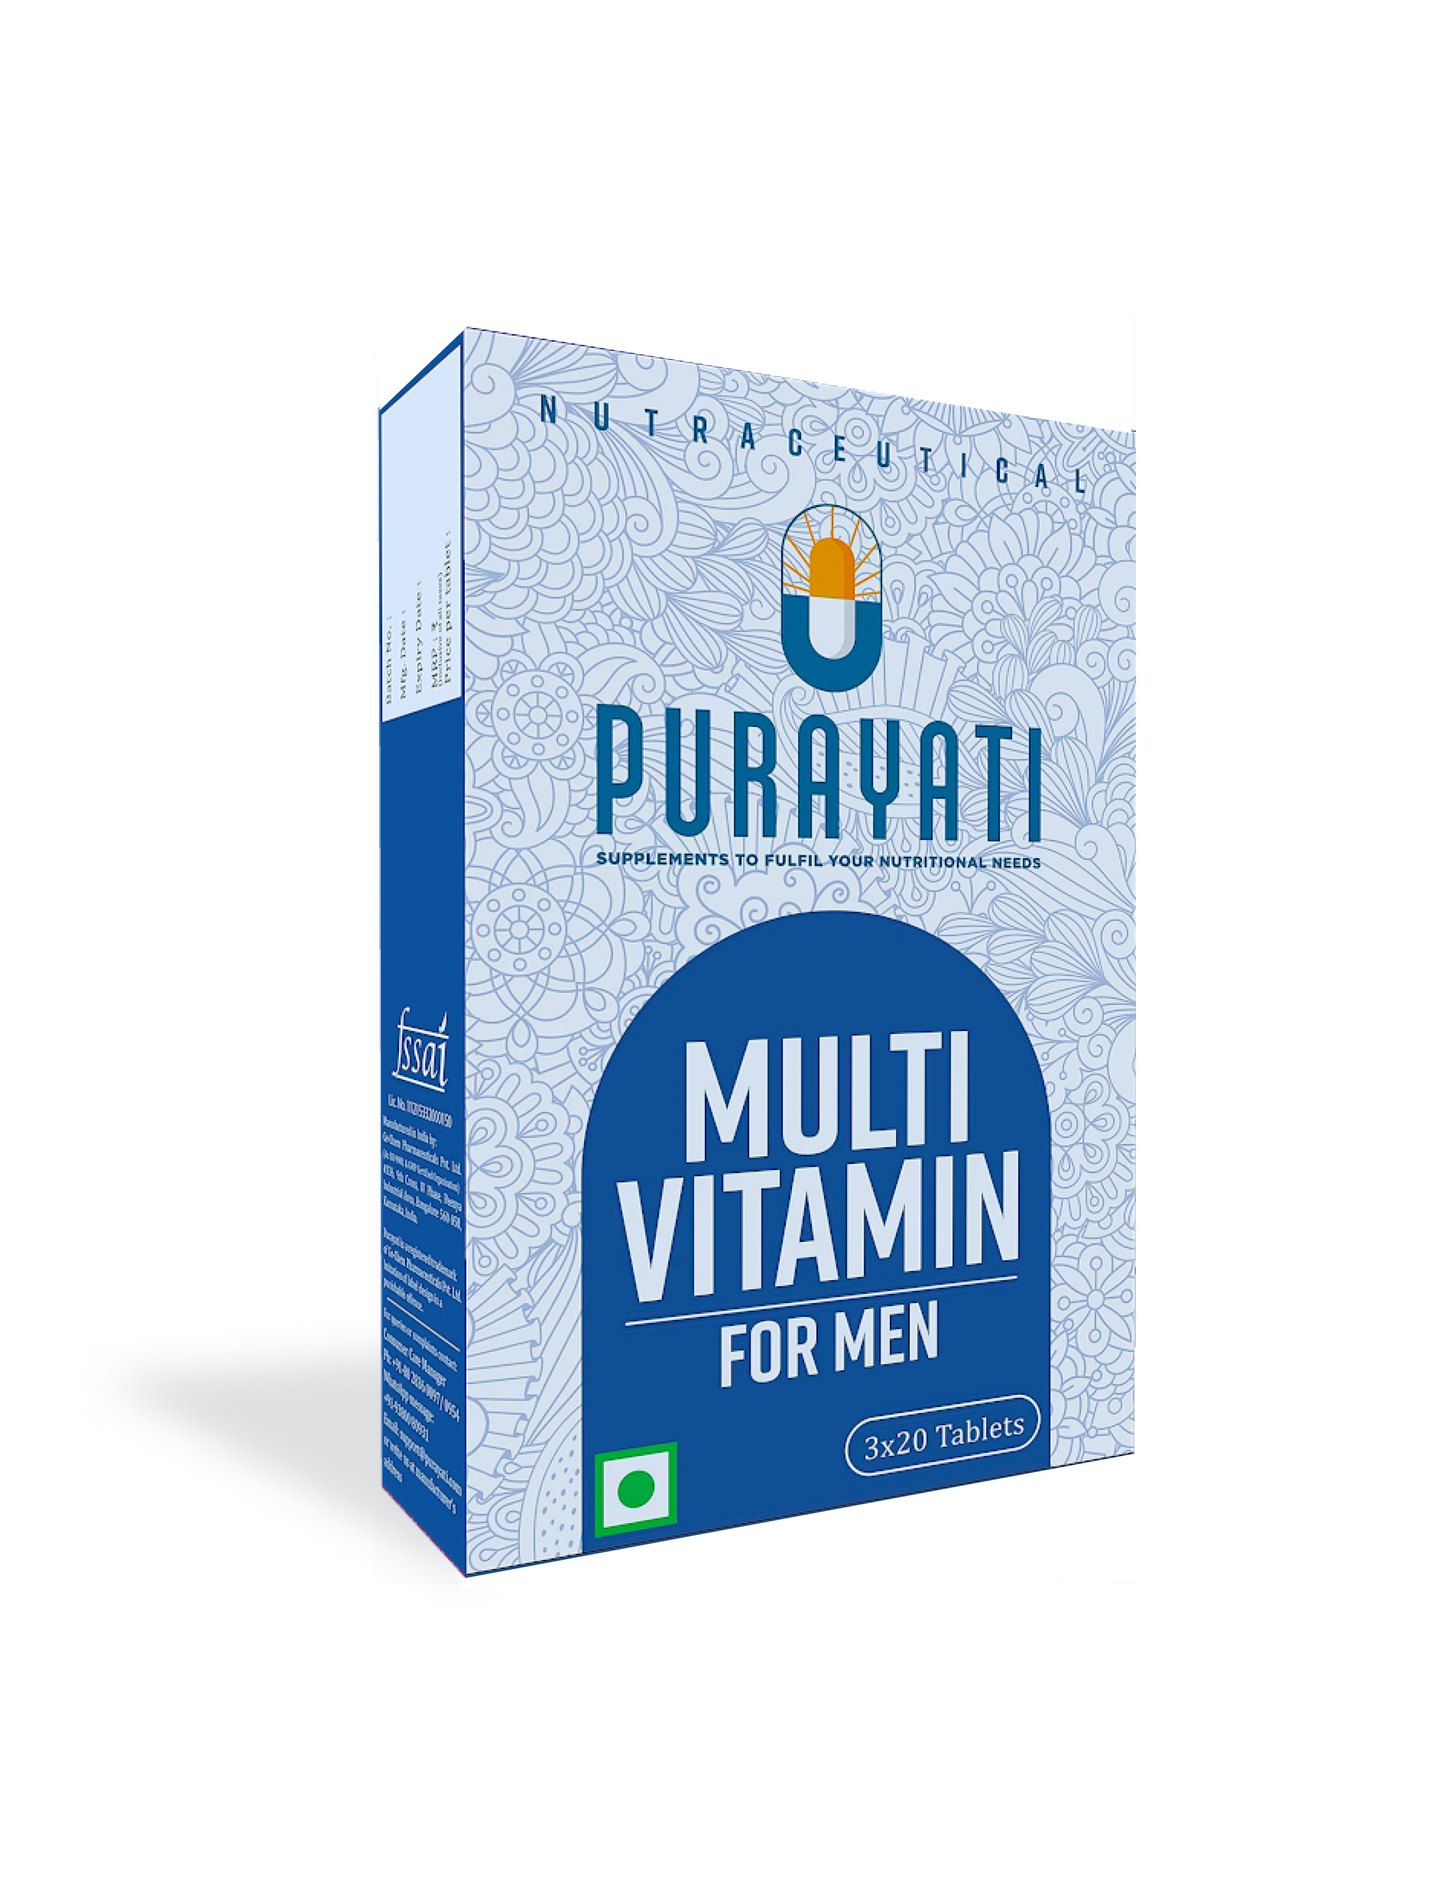 Multivitamin for Men (60 Tablets)